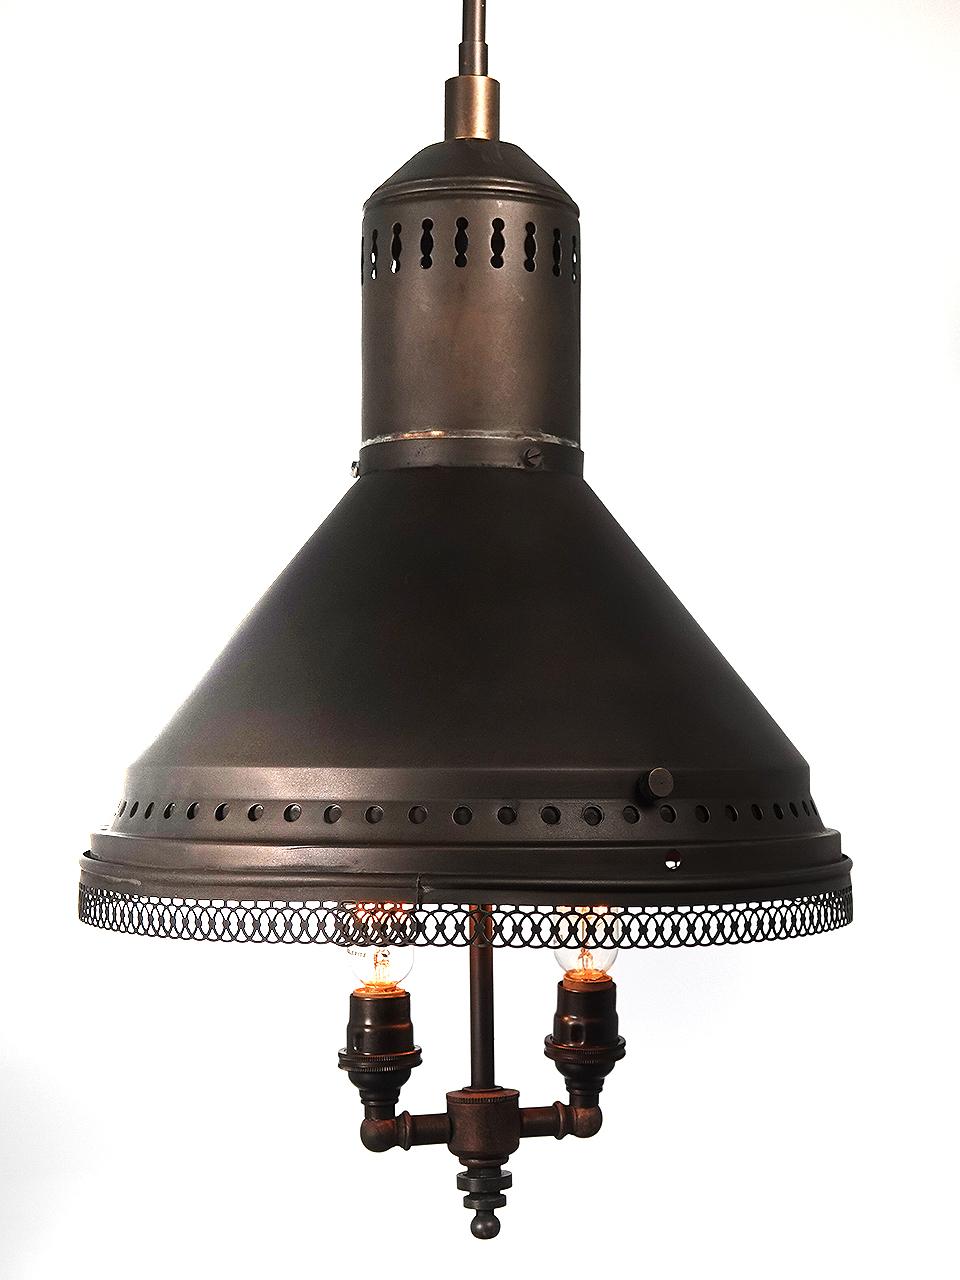 Wir lieben diese verspiegelten Reflektorlampen und sie sind auch bei Sammlern sehr beliebt. Dieses Exemplar hat einen Durchmesser von 12 Zoll mit 24 einzelnen handgeschnittenen Spiegeln und einem filigranen unteren Rand. Möglicherweise war es früher